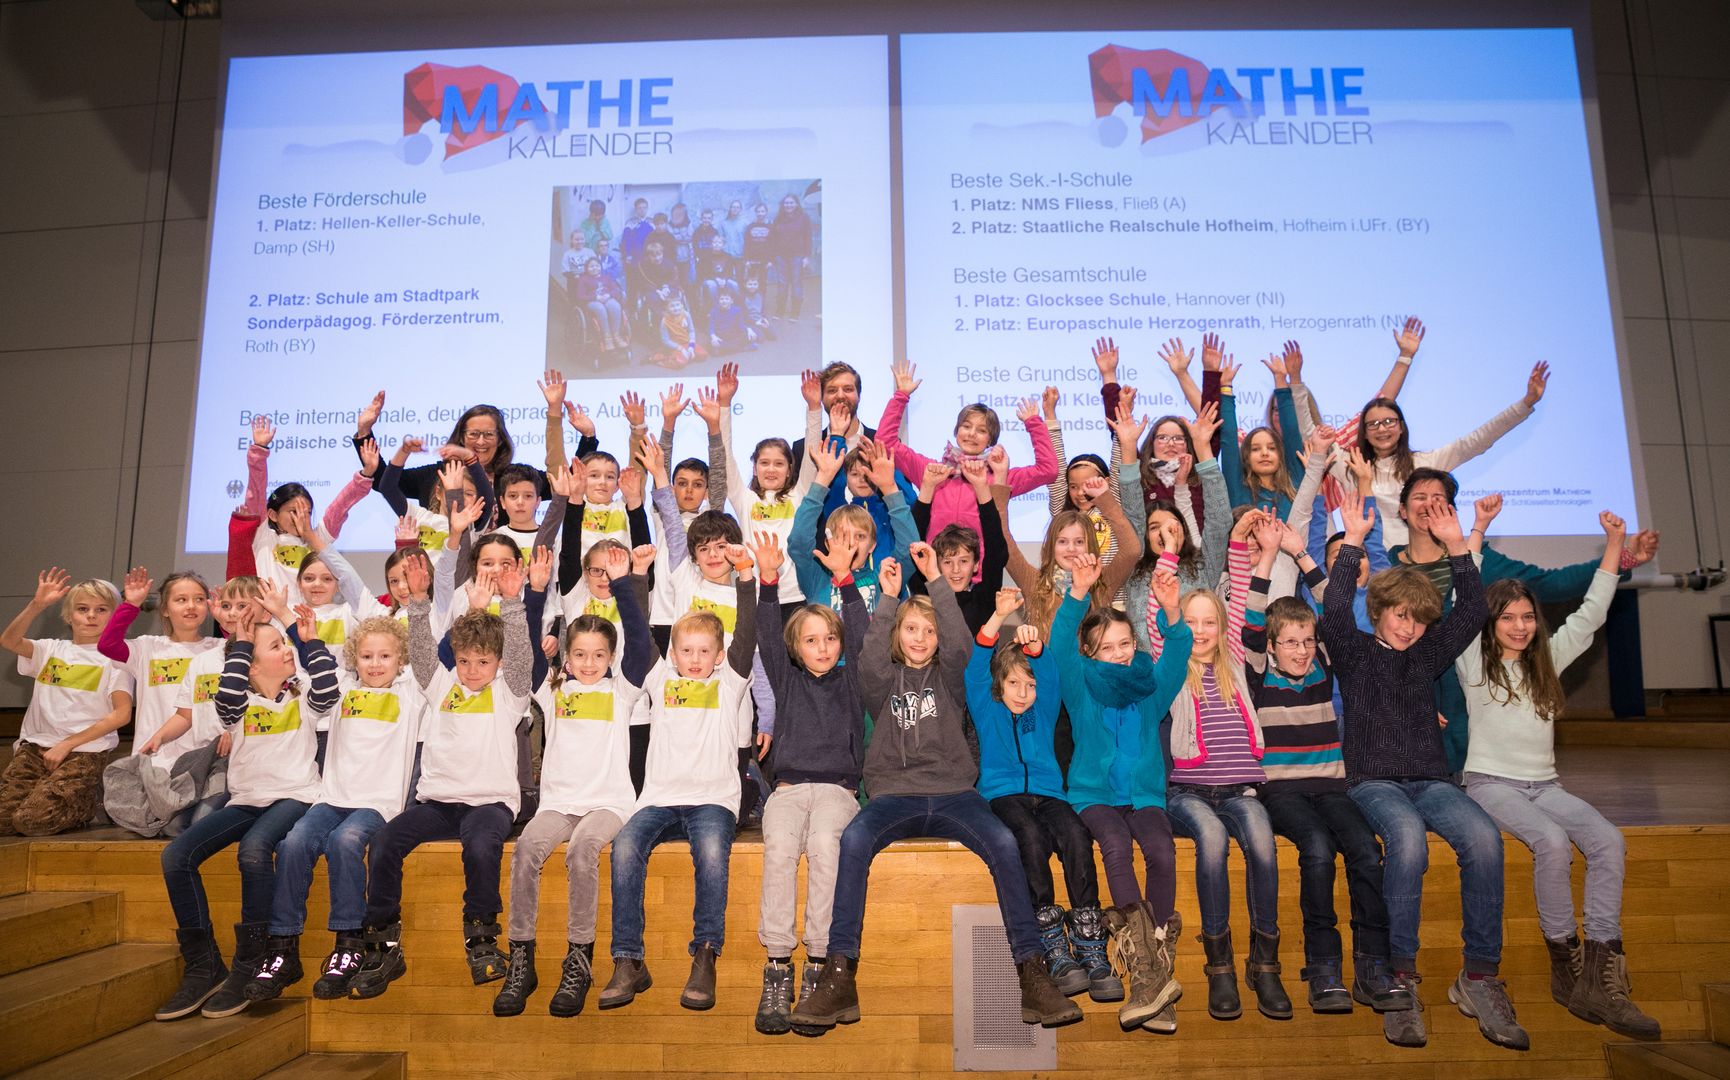 Schüler_innen der Paul-Klee-Schule in Köln und der Glocksee Schule in Hannover jubelnd auf der Bühne